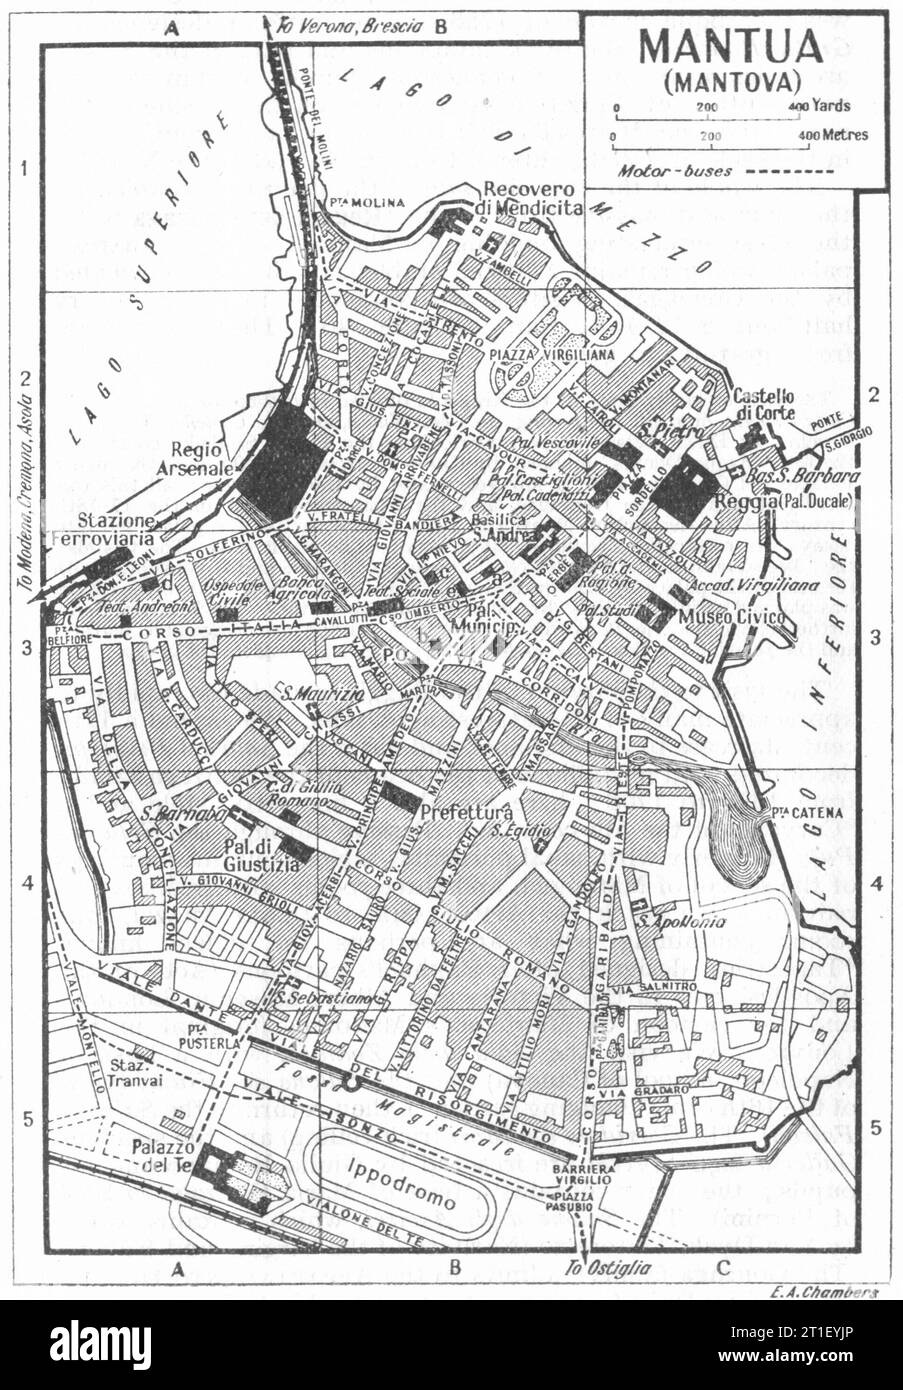 Piano città DI MANTOVA. Italia 1953 vecchia mappa d'epoca Foto Stock